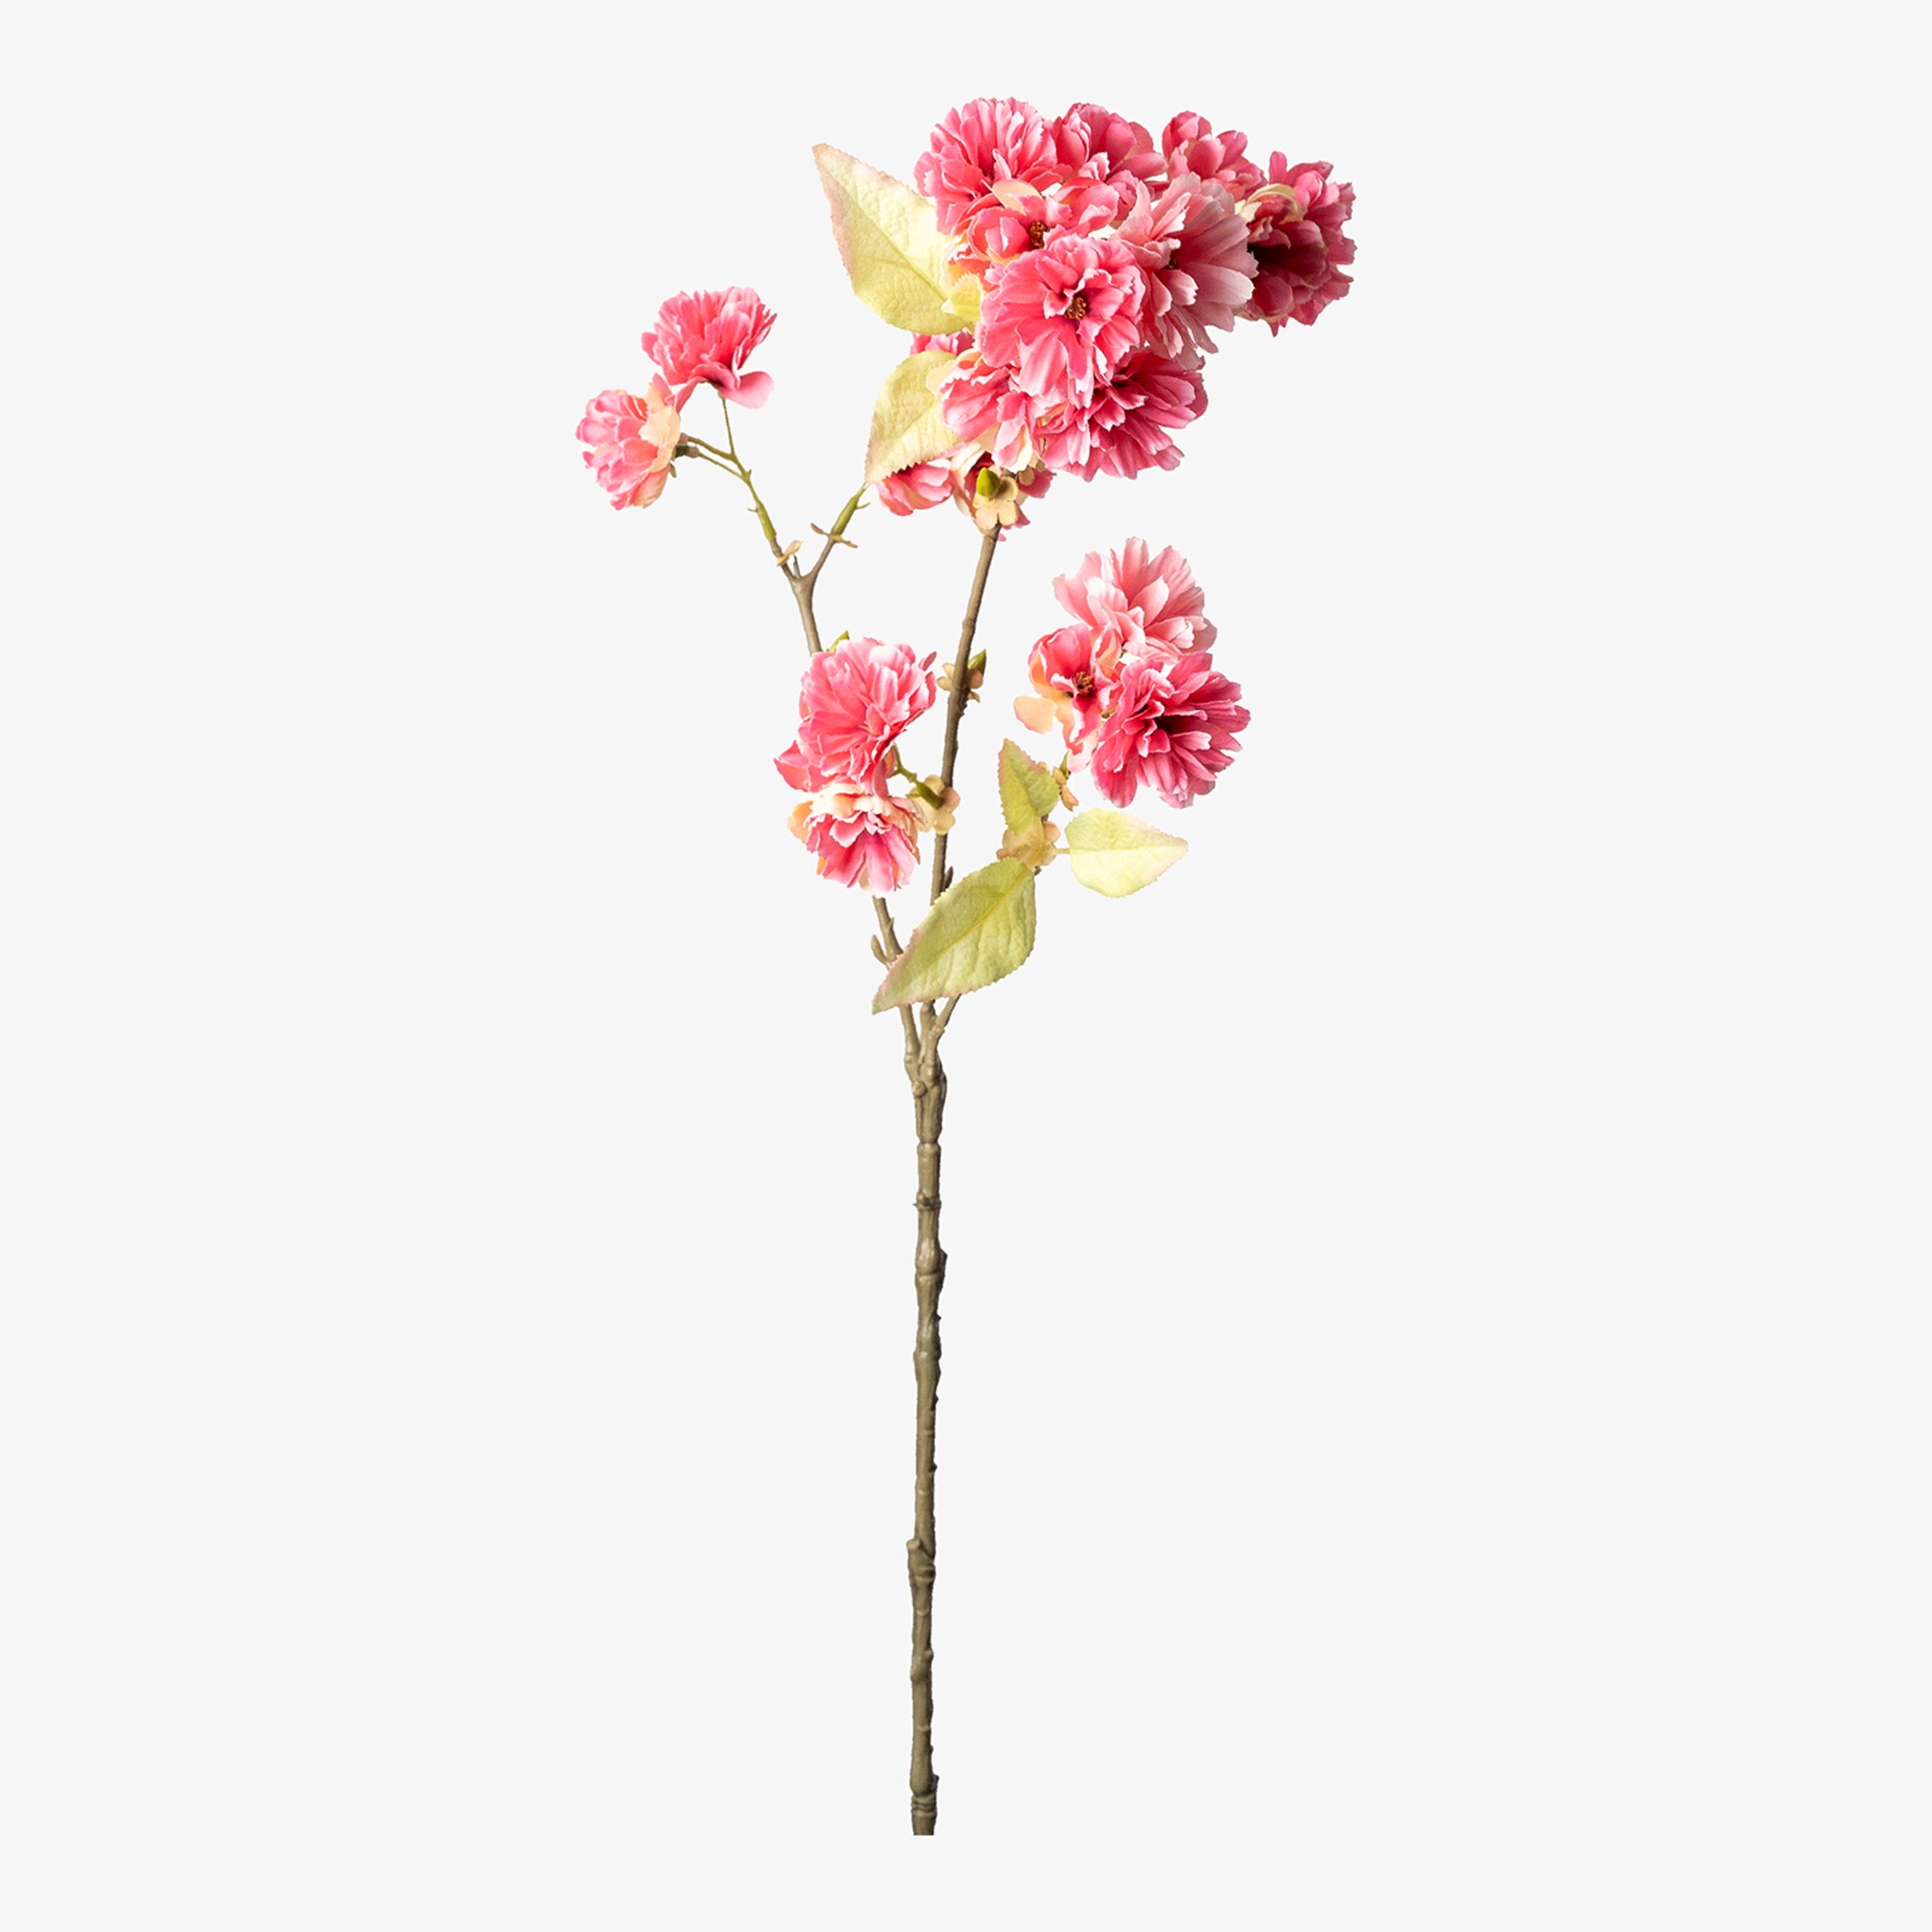 Branche artistique fleur de cerisier